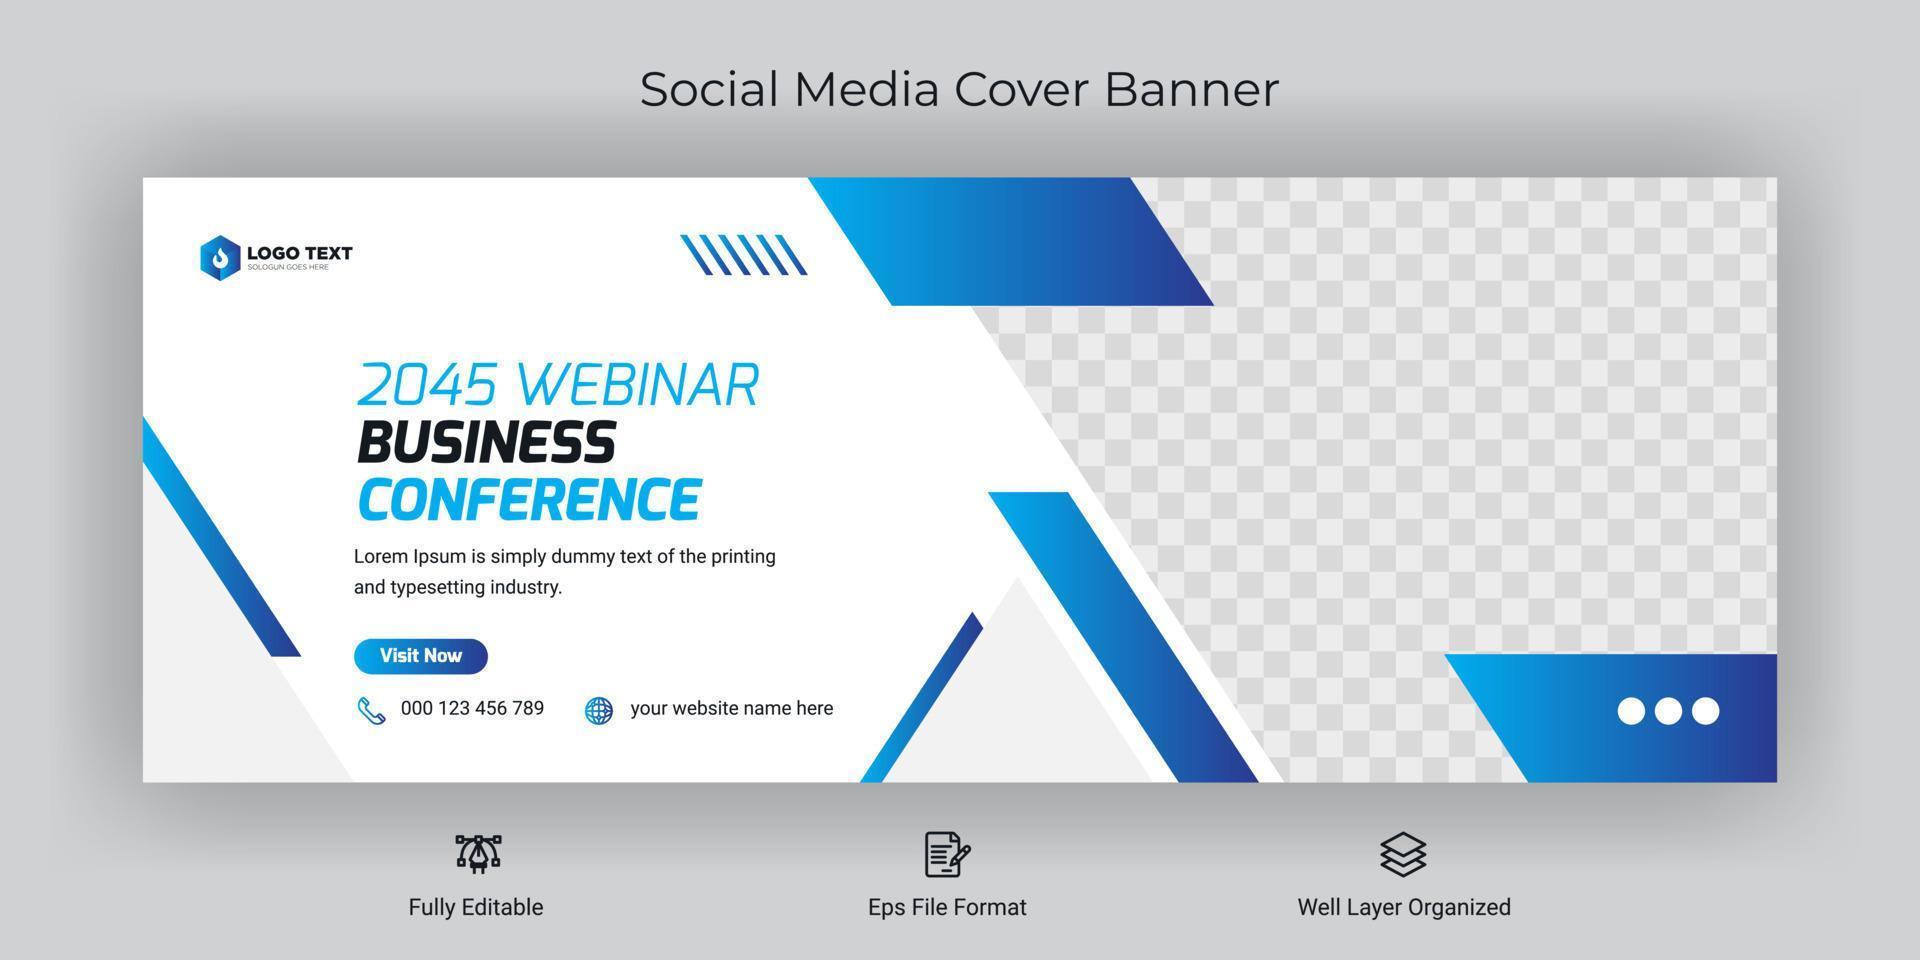 modelo de banner de capa do facebook de postagem de mídia social de conferência de negócios on-line vetor